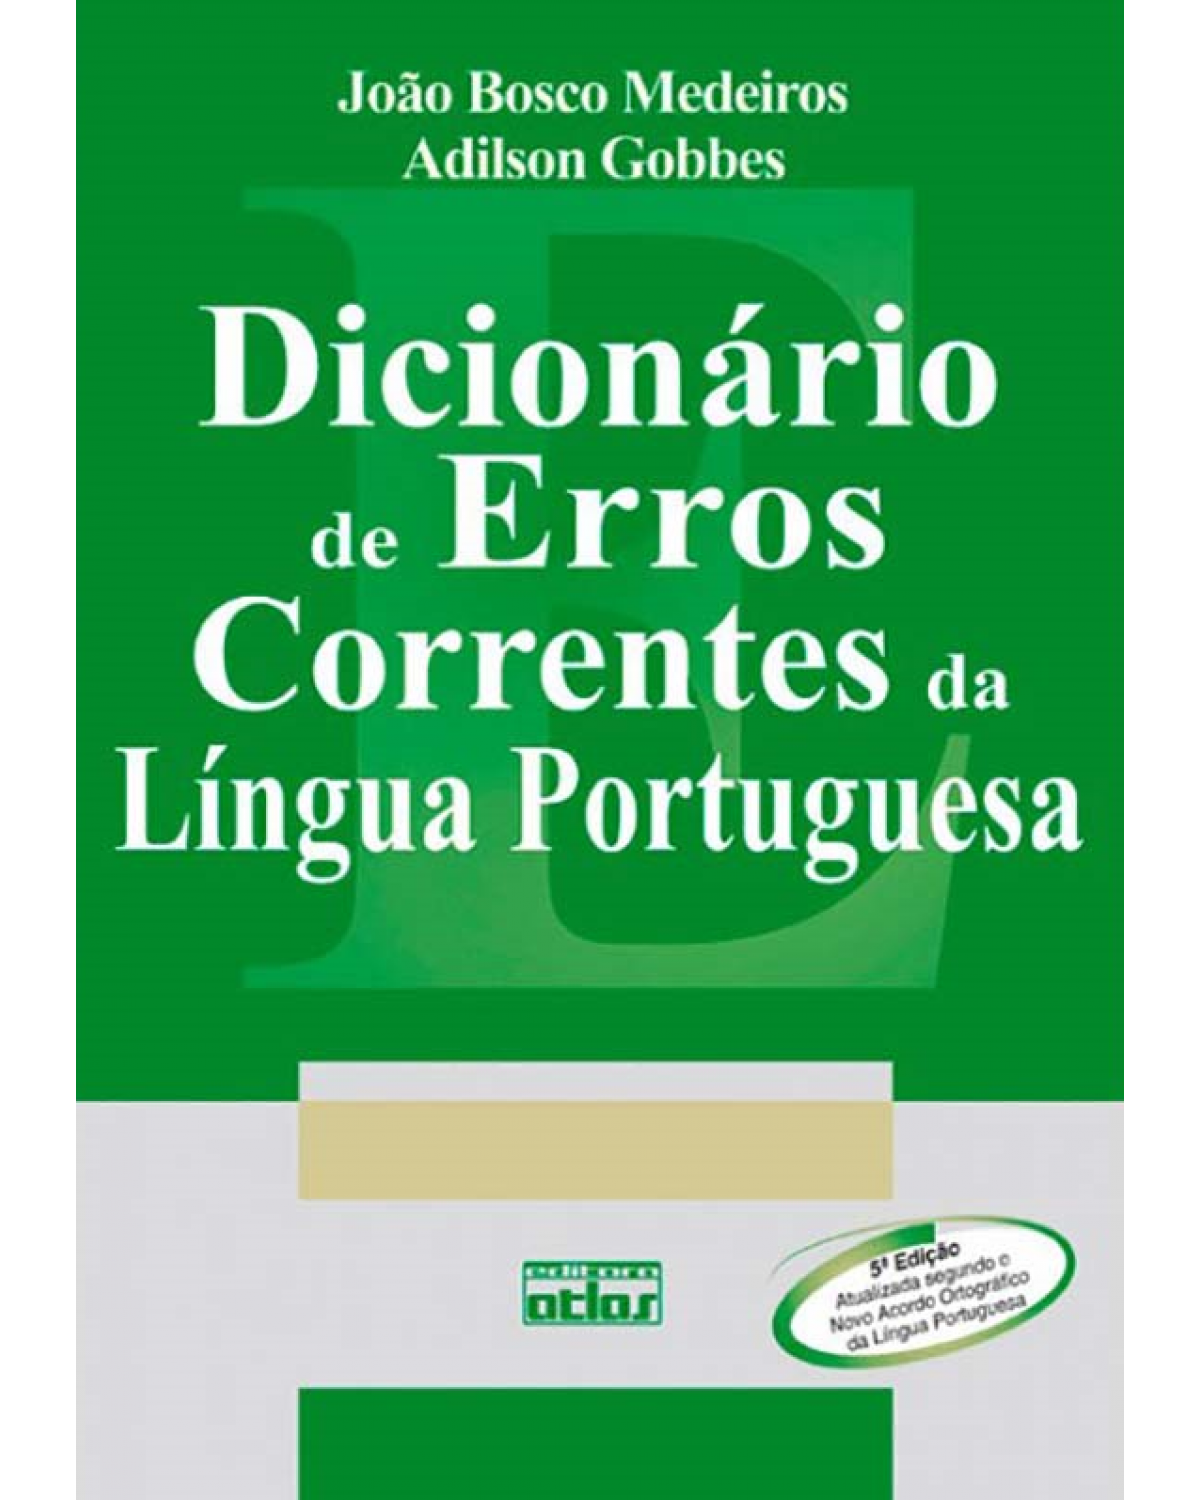 Dicionário de erros correntes da língua portuguesa - 5ª Edição | 2009